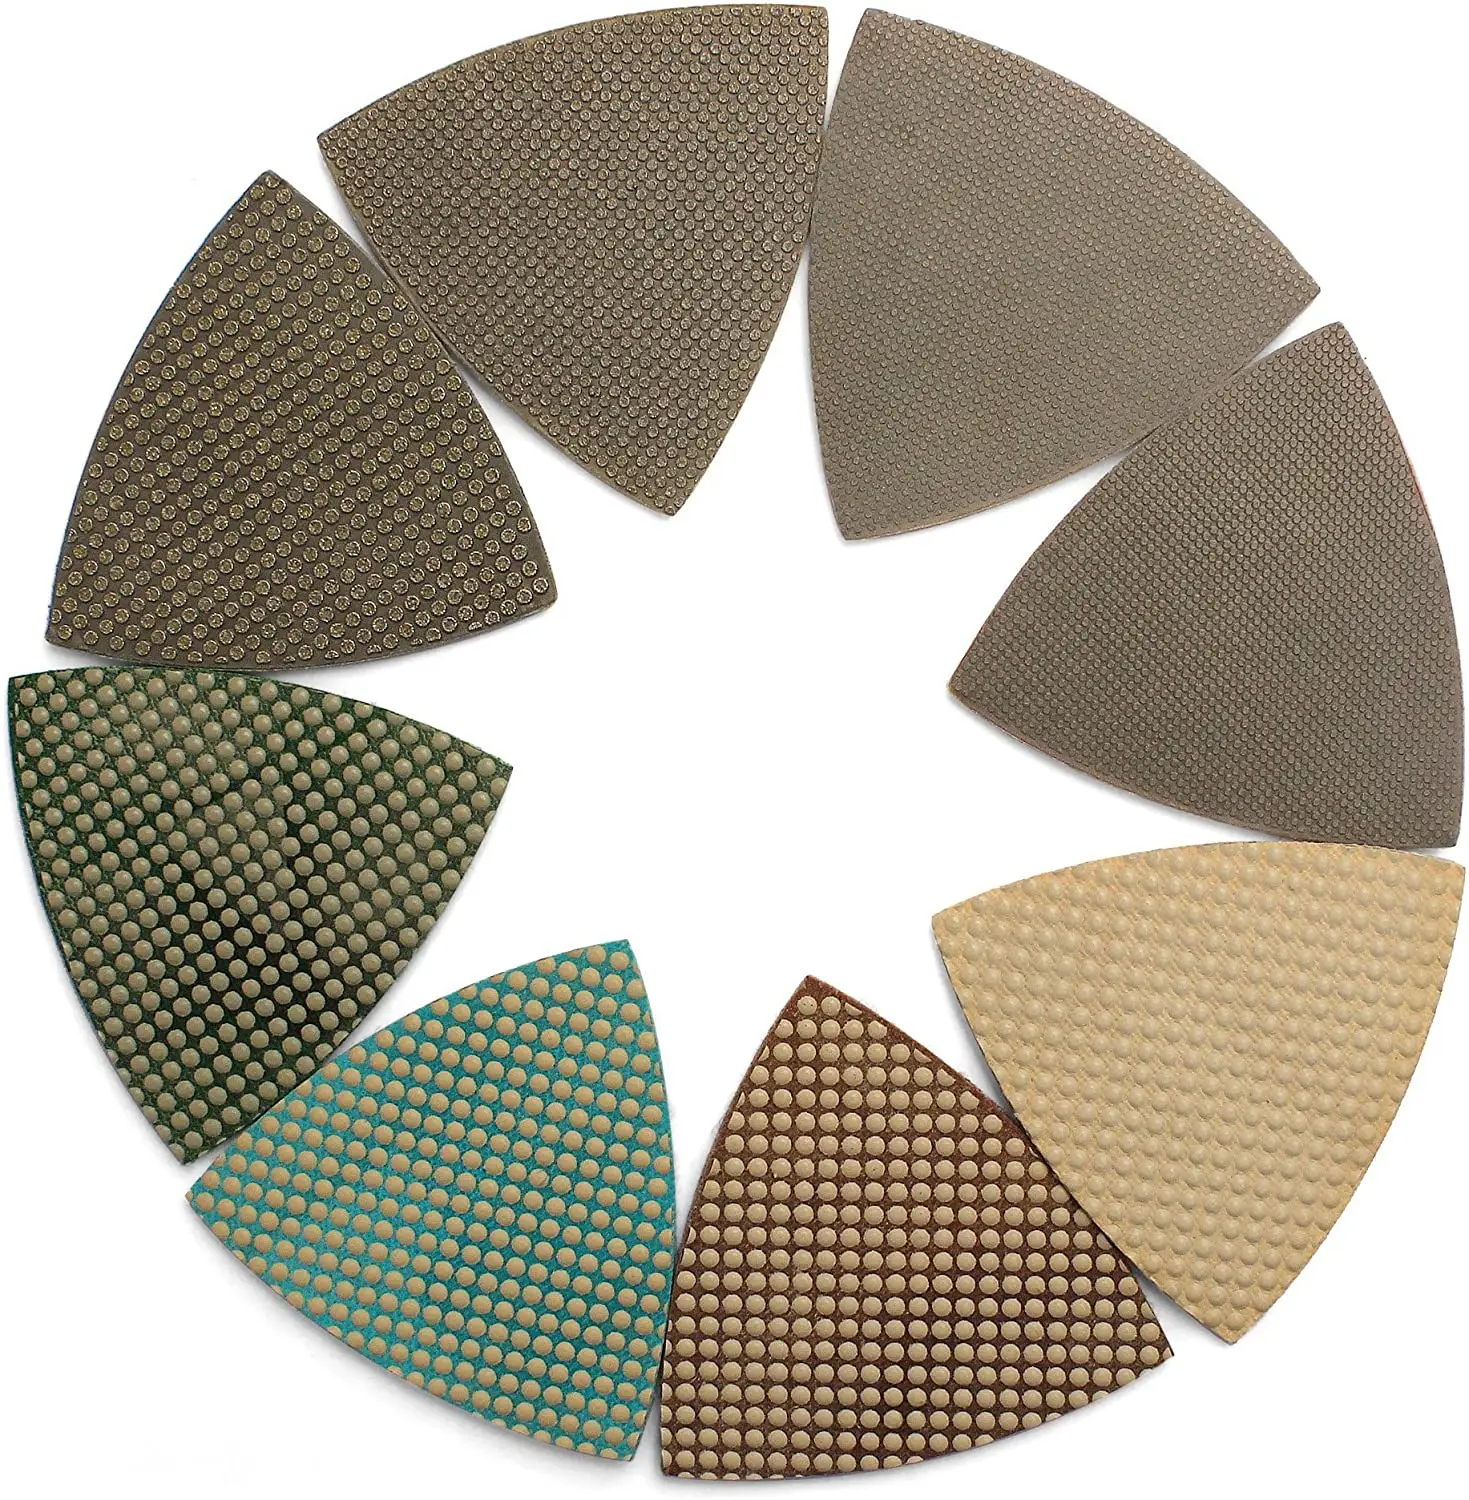 Trung Quốc Nhà sản xuất tam giác giấy nhám, kim cương khô đánh bóng Sanding Pads Sheets đối với Glass đá cẩm thạch và bê tông góc